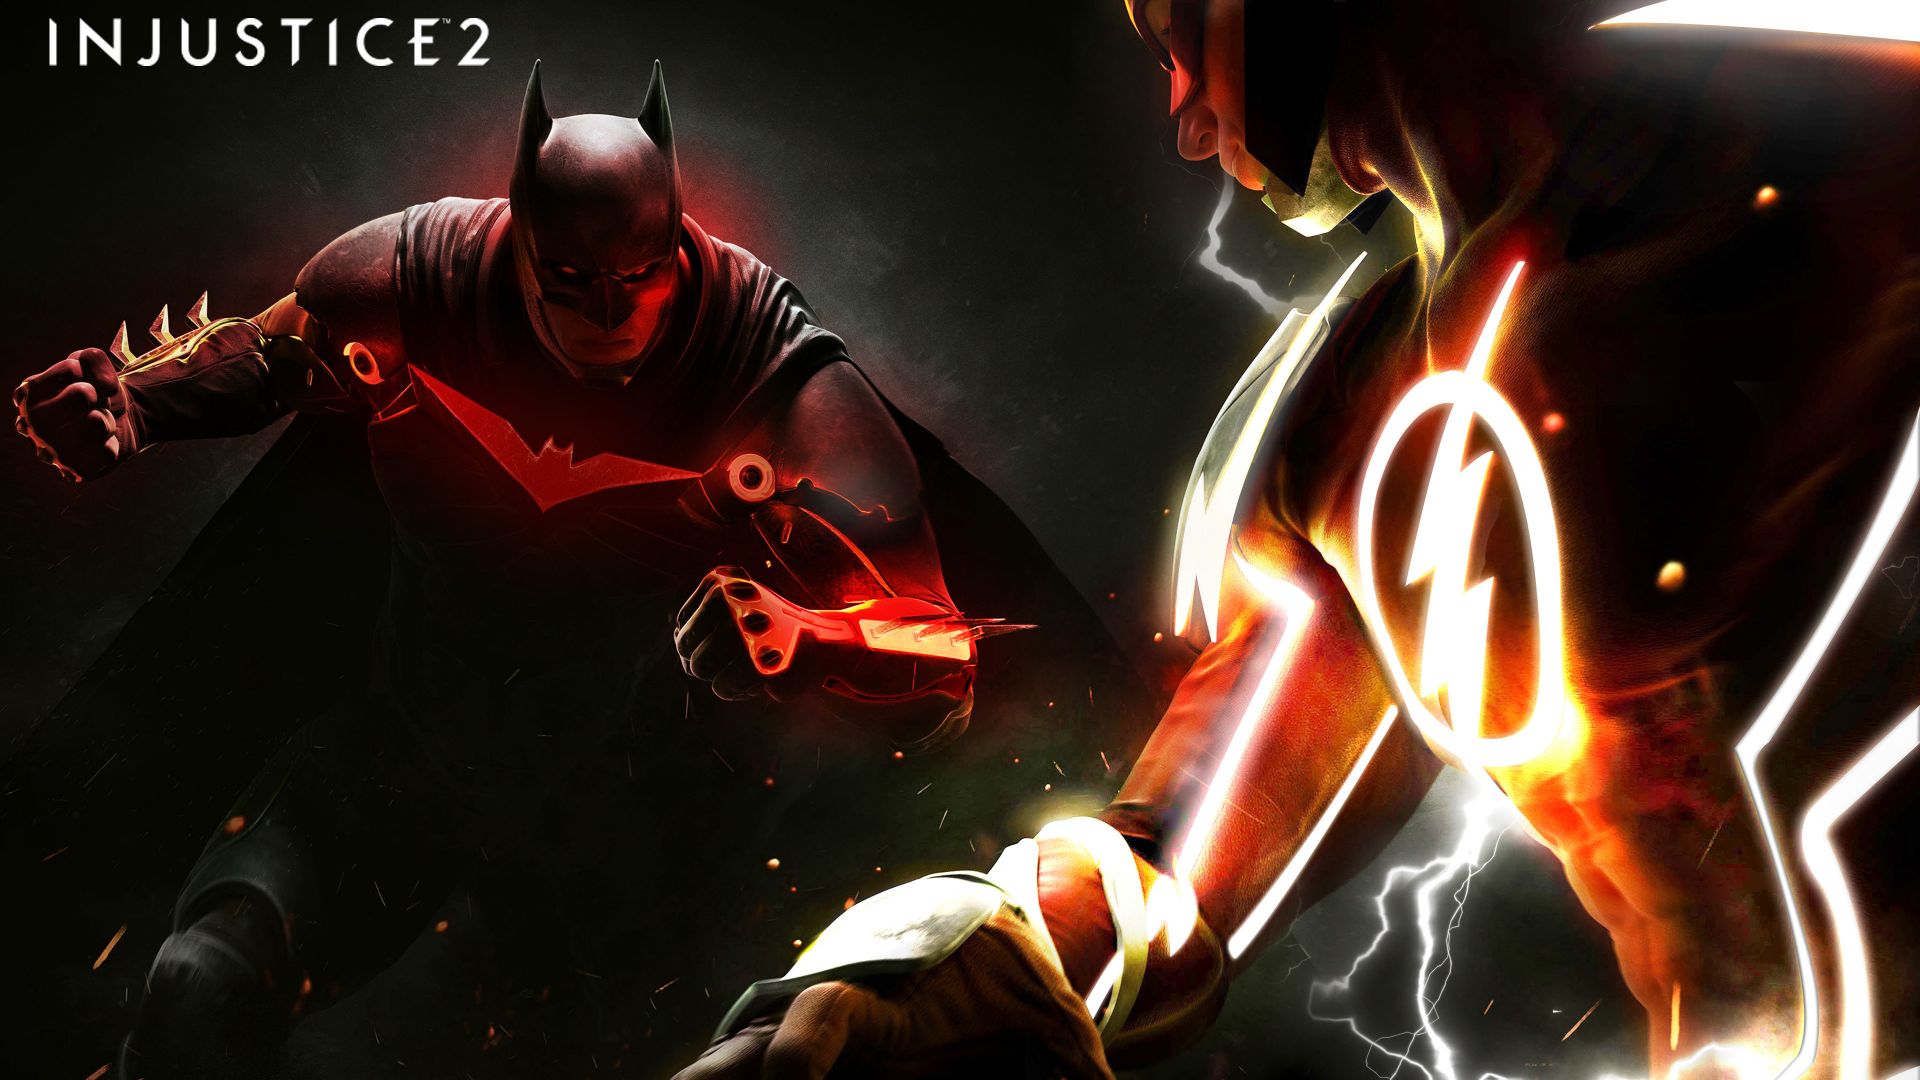 Wallpaper Injustice 2, poster, batman vs flash, 4k